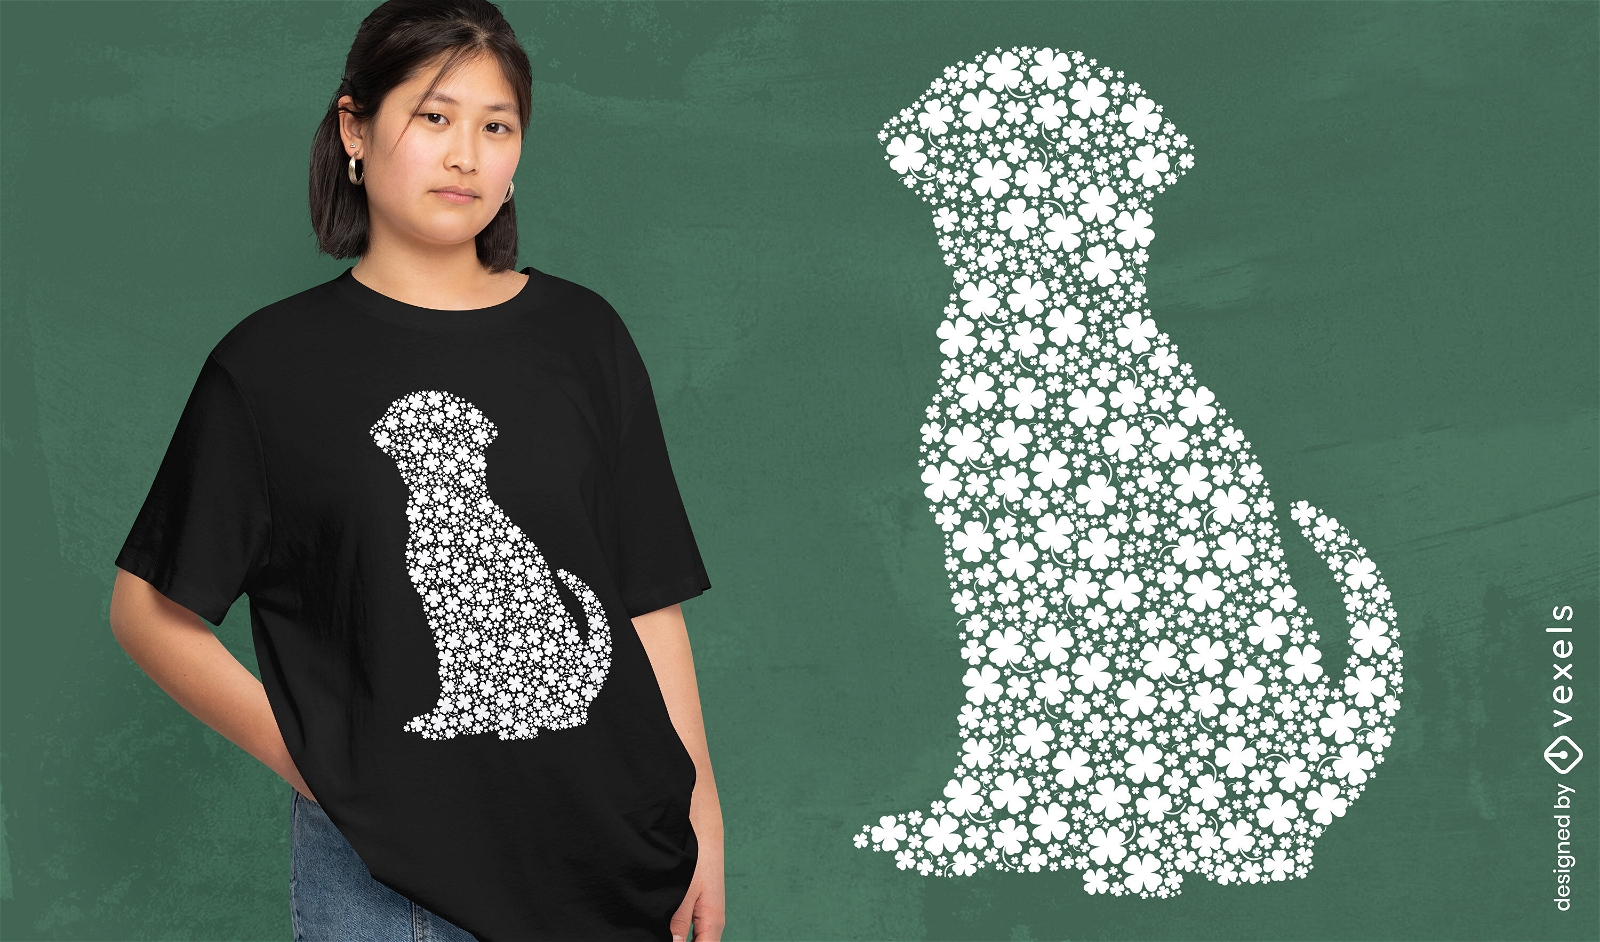 Labrador-Hund aus Klee-T-Shirt-Design